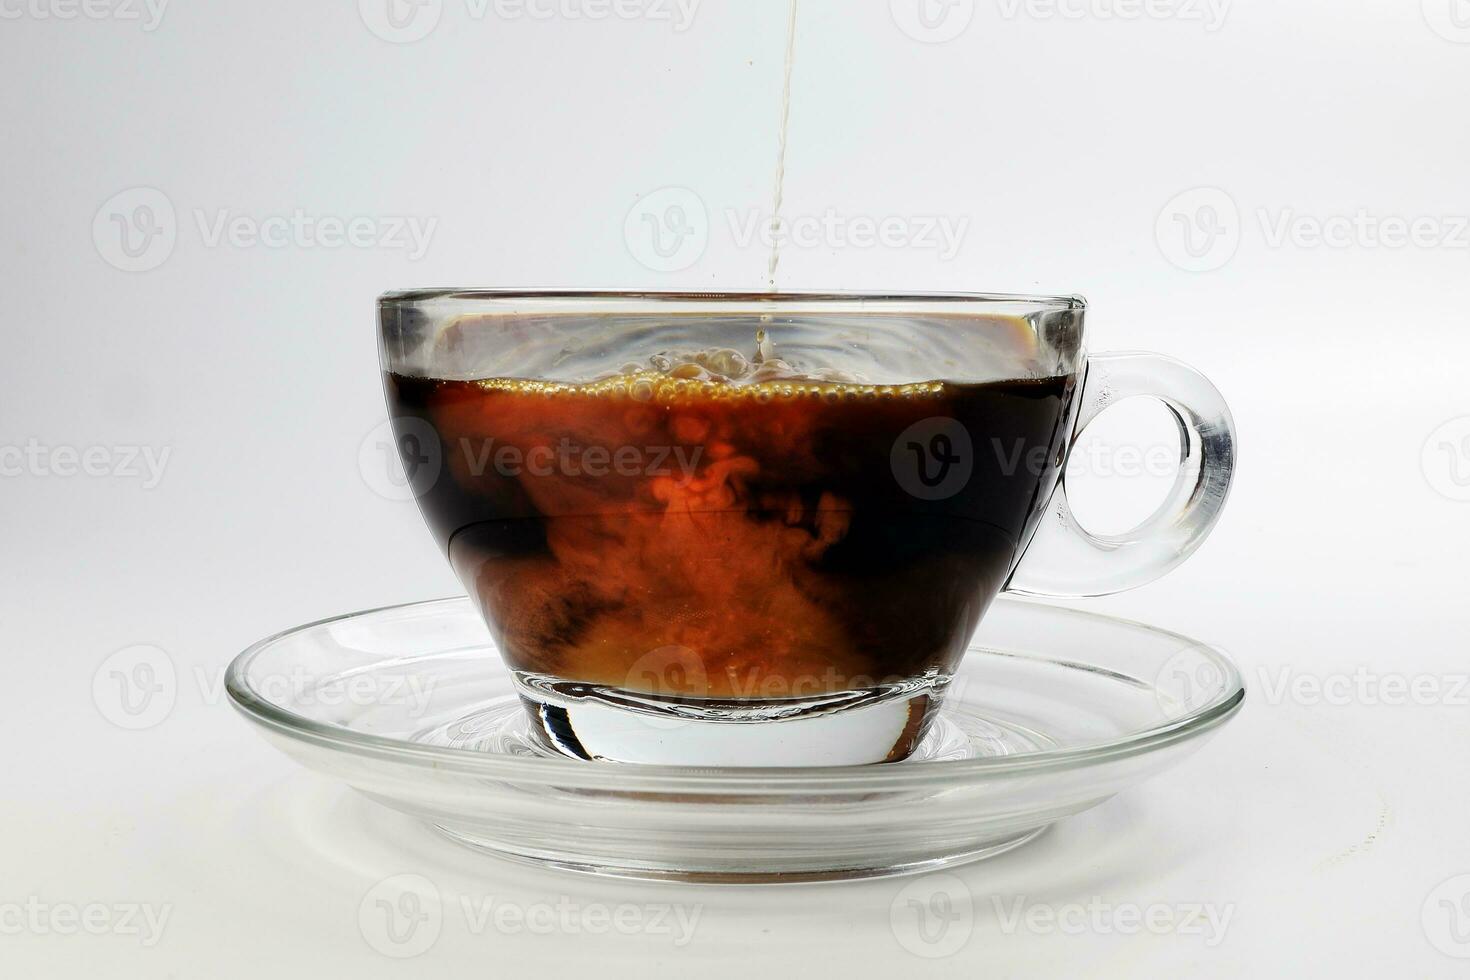 mörk kaffe poring vit mjölk droppande stänk skugga flytande virvla runt i glas kopp fat på vit bakgrund foto